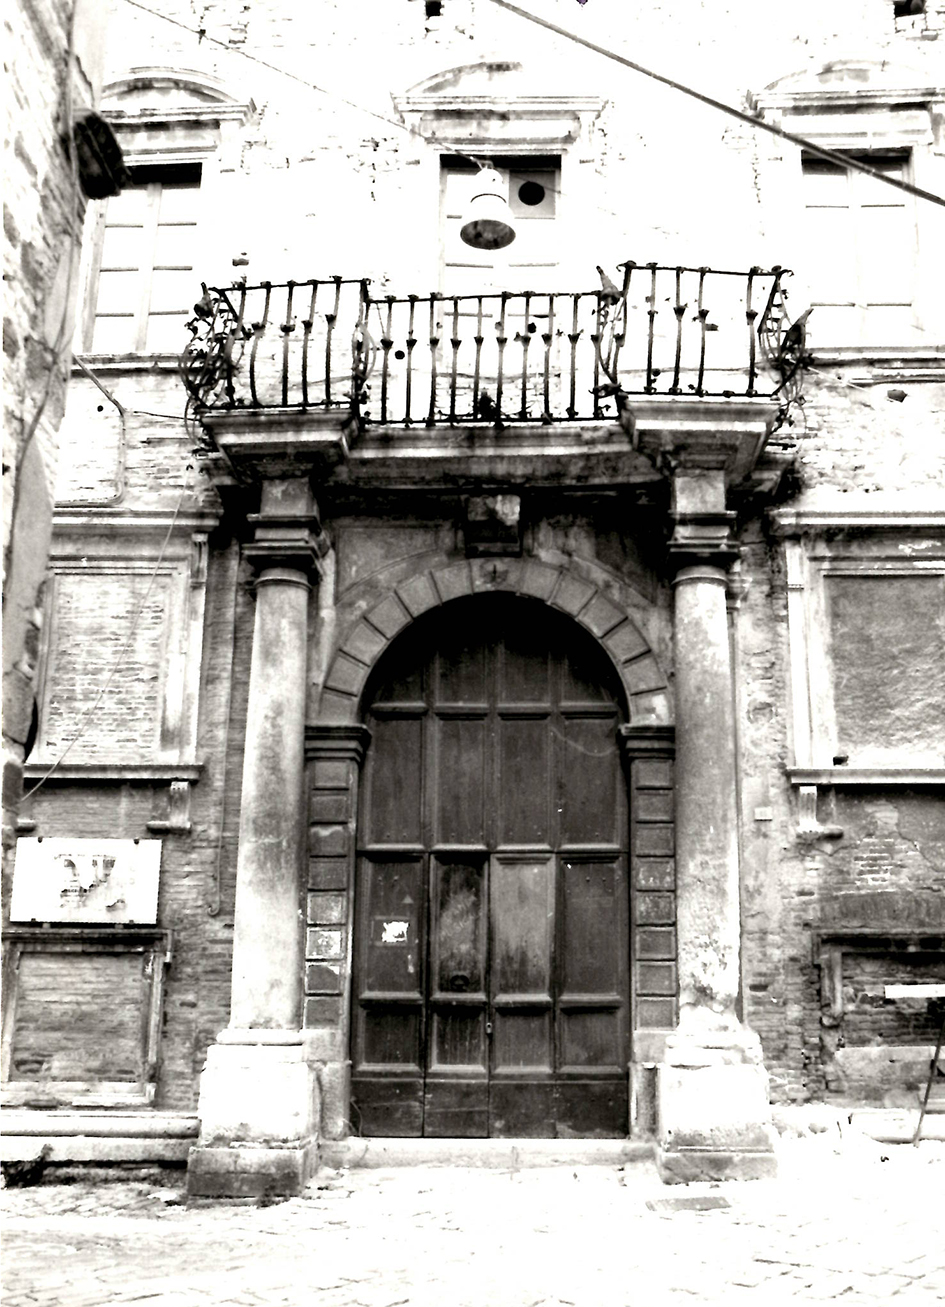 Palazzo Servanzi (palazzo, signorile) - San Severino Marche (MC) 